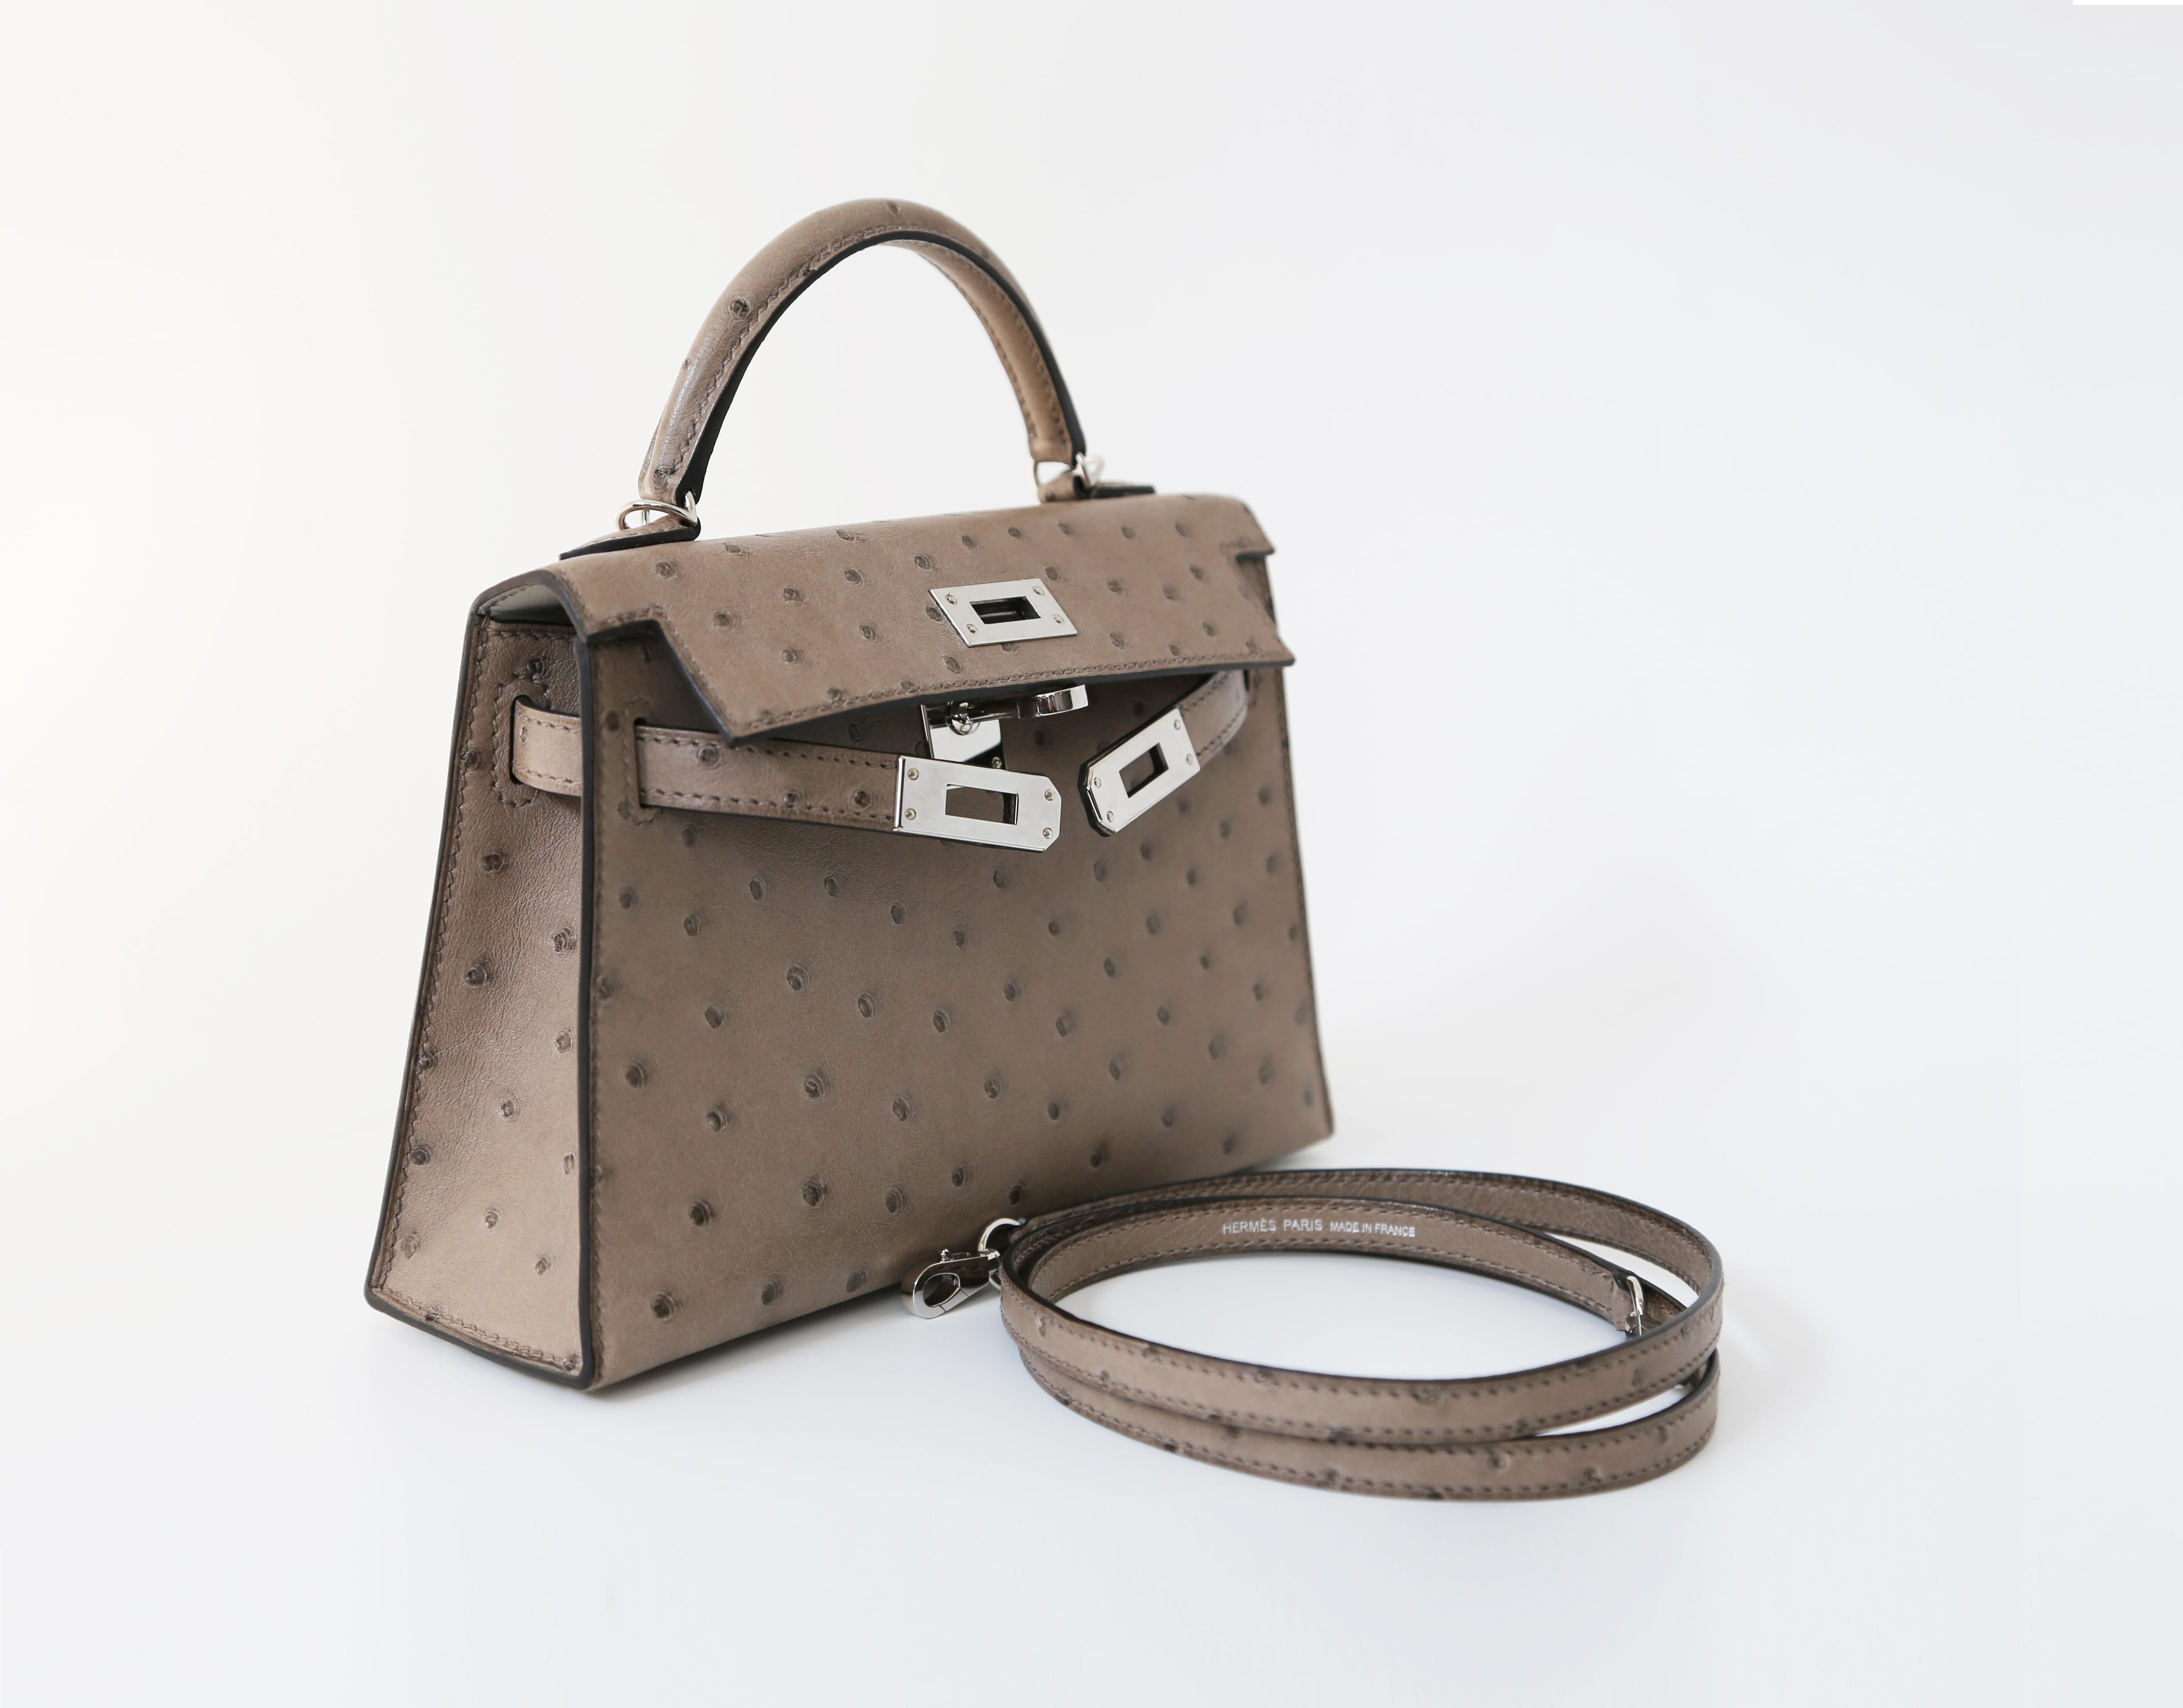 Die Kelly-Tasche wurde 1997 nach Grace Kelly, der Fürstin von Monaco, benannt und ist eines der begehrtesten Modelle der Welt. Der Zusammenbau der Kelly-Tasche, die von einem erfahrenen Handwerker in akribischer Kleinarbeit hergestellt wird, kann